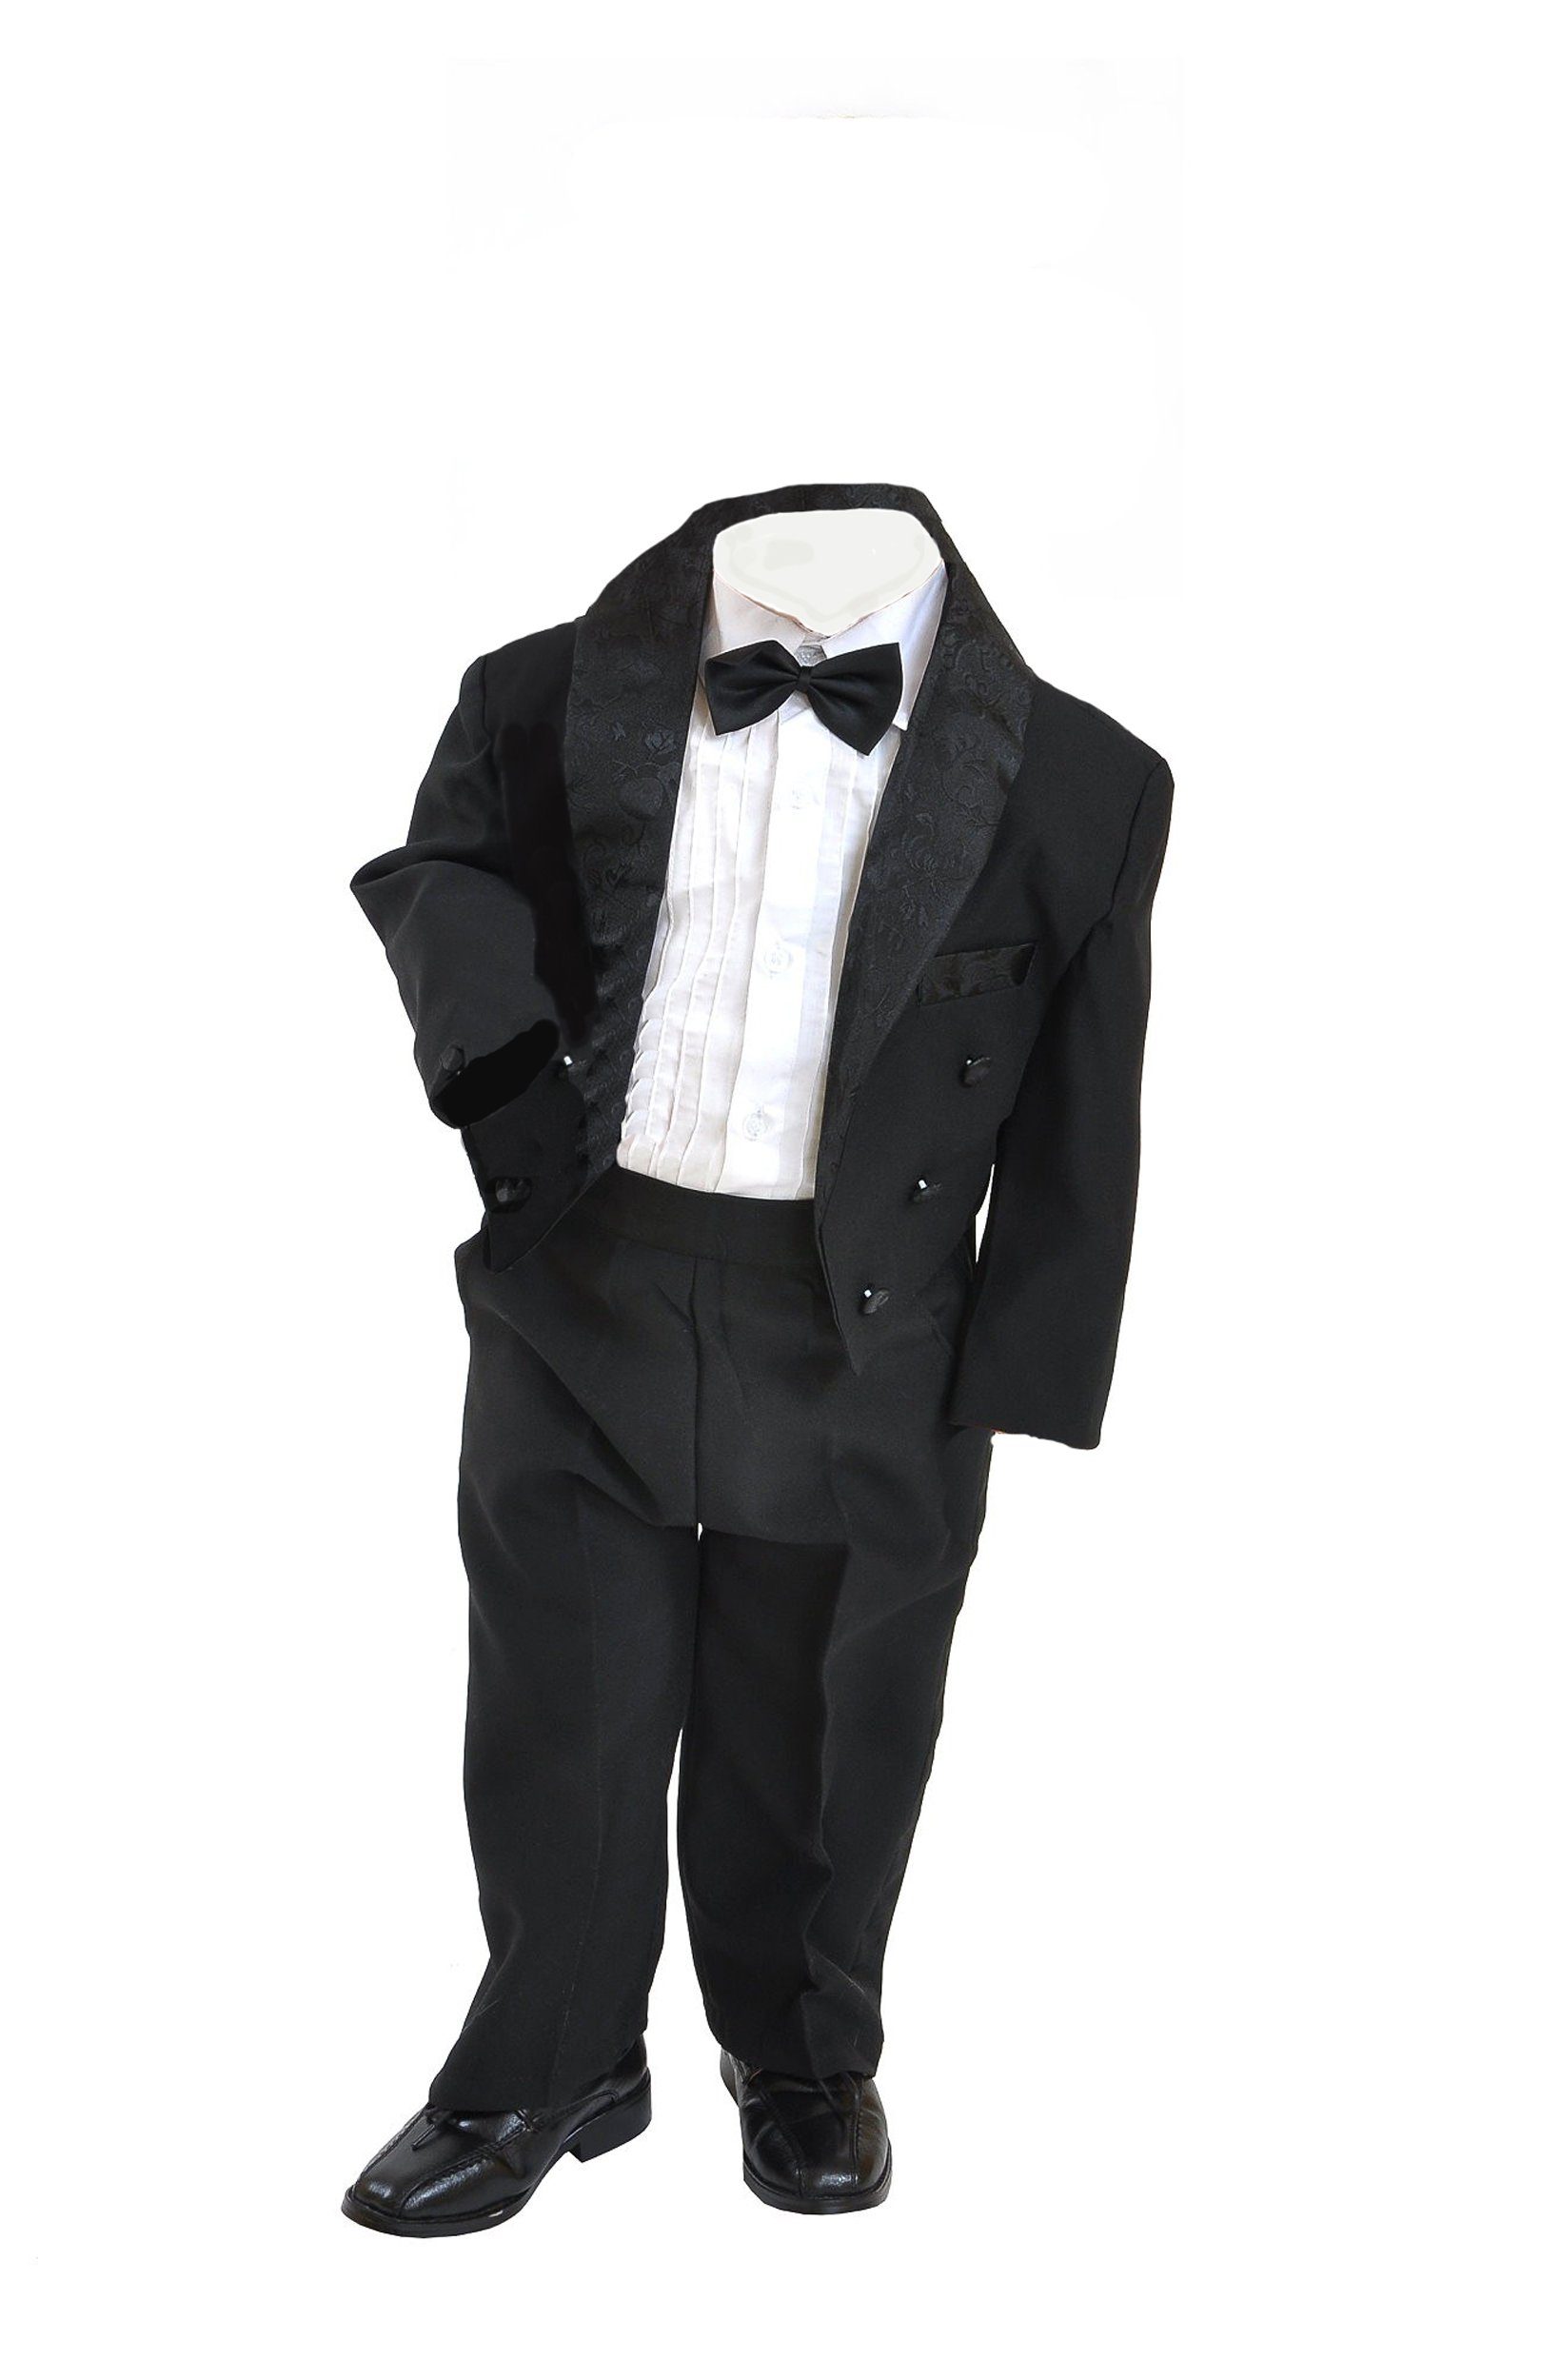 Family Trends im 5-teiligen Anzug schwarz Look eleganten Set im